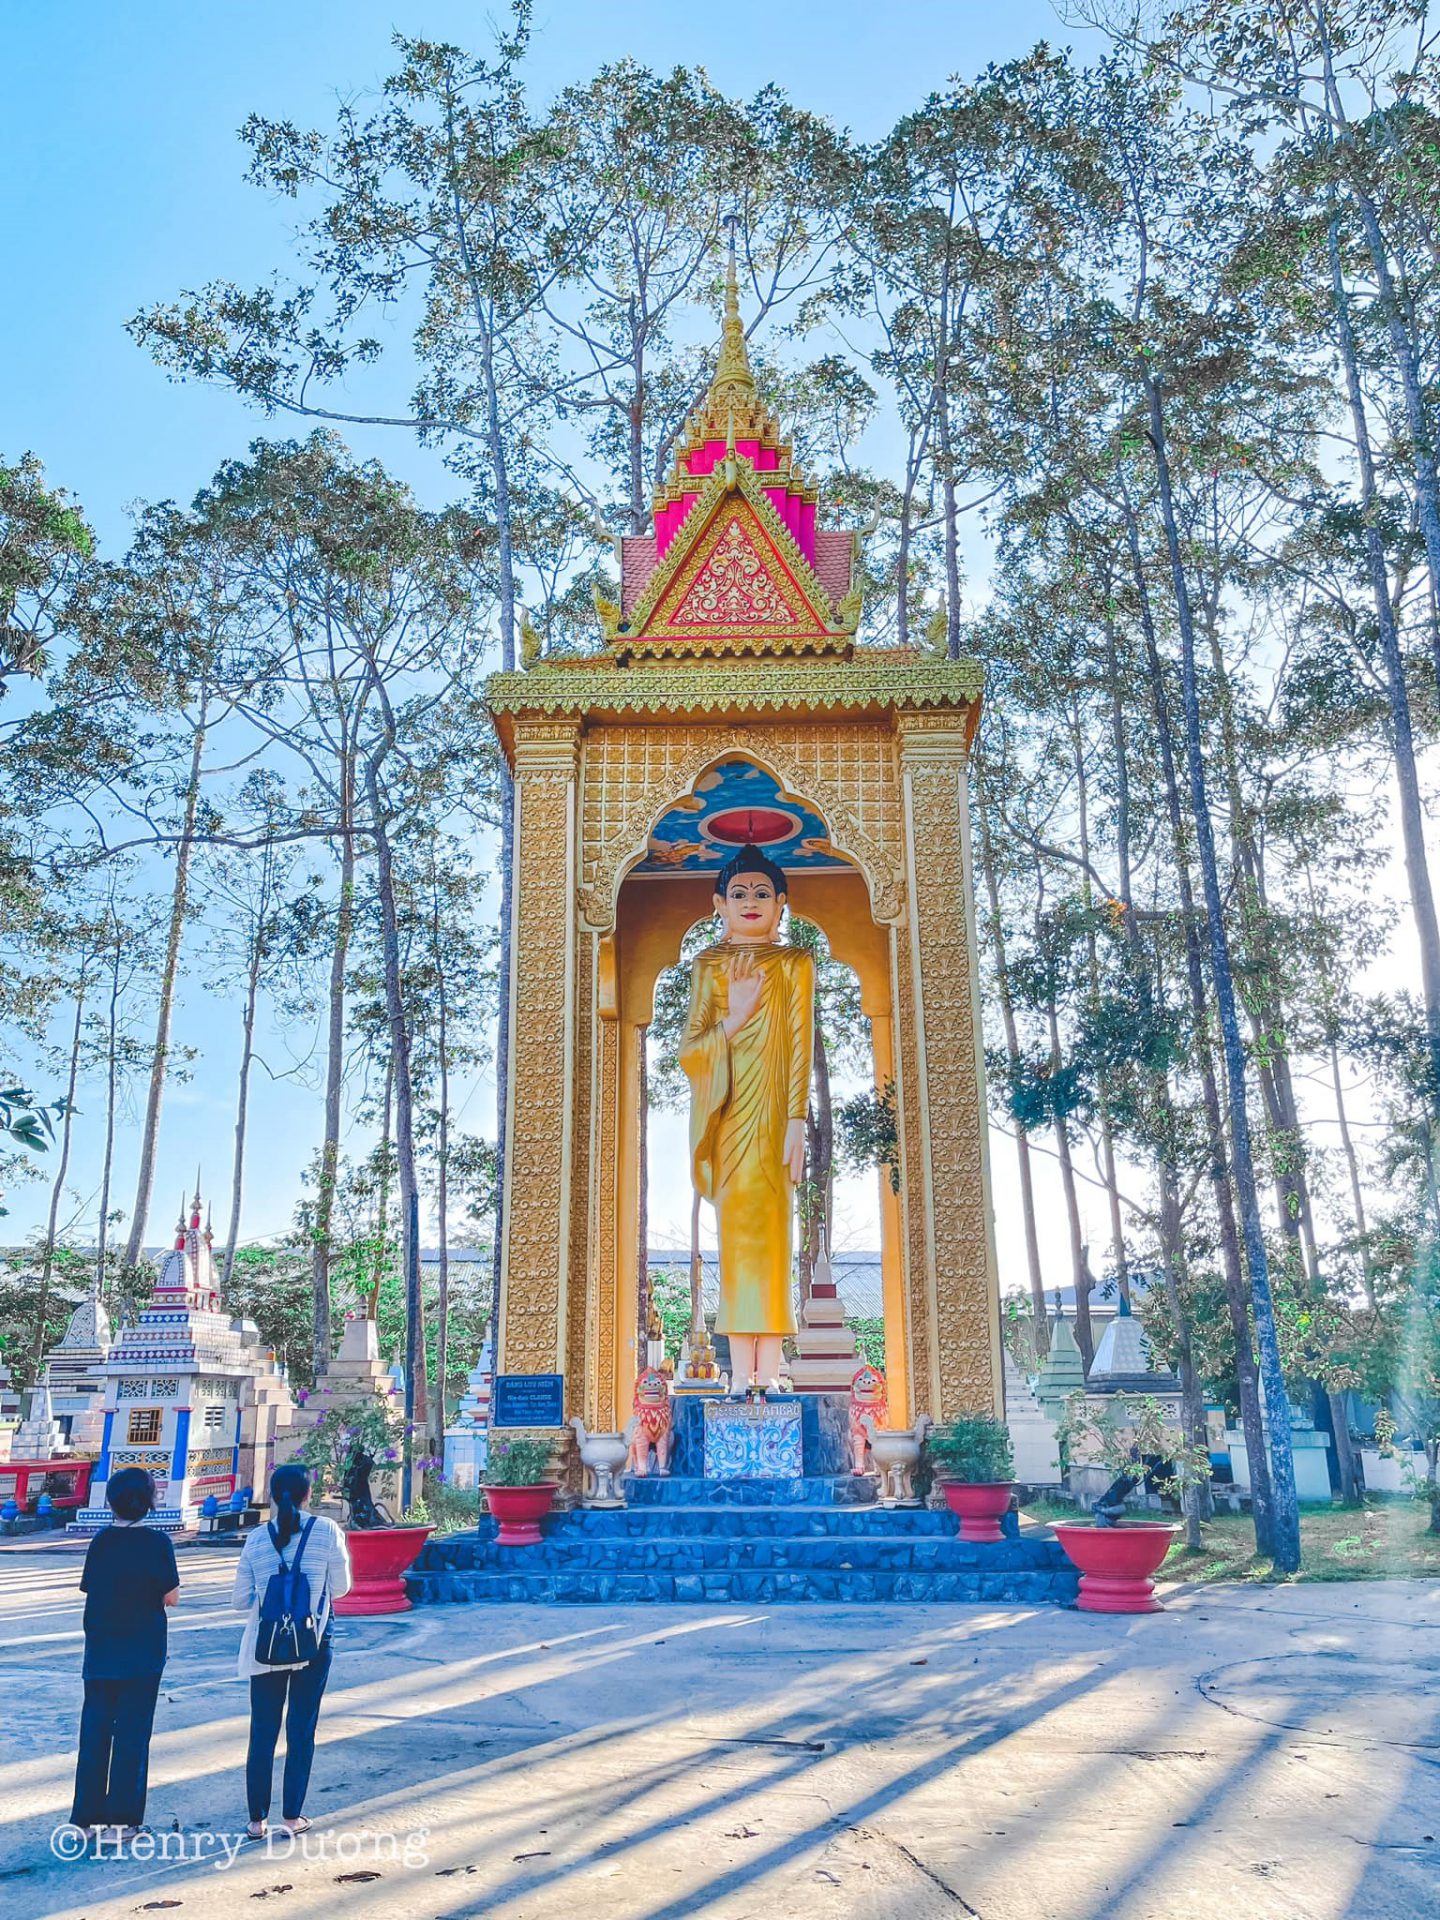 Chùa Chén Kiểu là một ngôi chùa nổi tiếng tại Sóc Trăng, là địa điểm hành hương tâm linh không thể thiếu đối với đời sống của người dân và cộng đồng người Khmer.